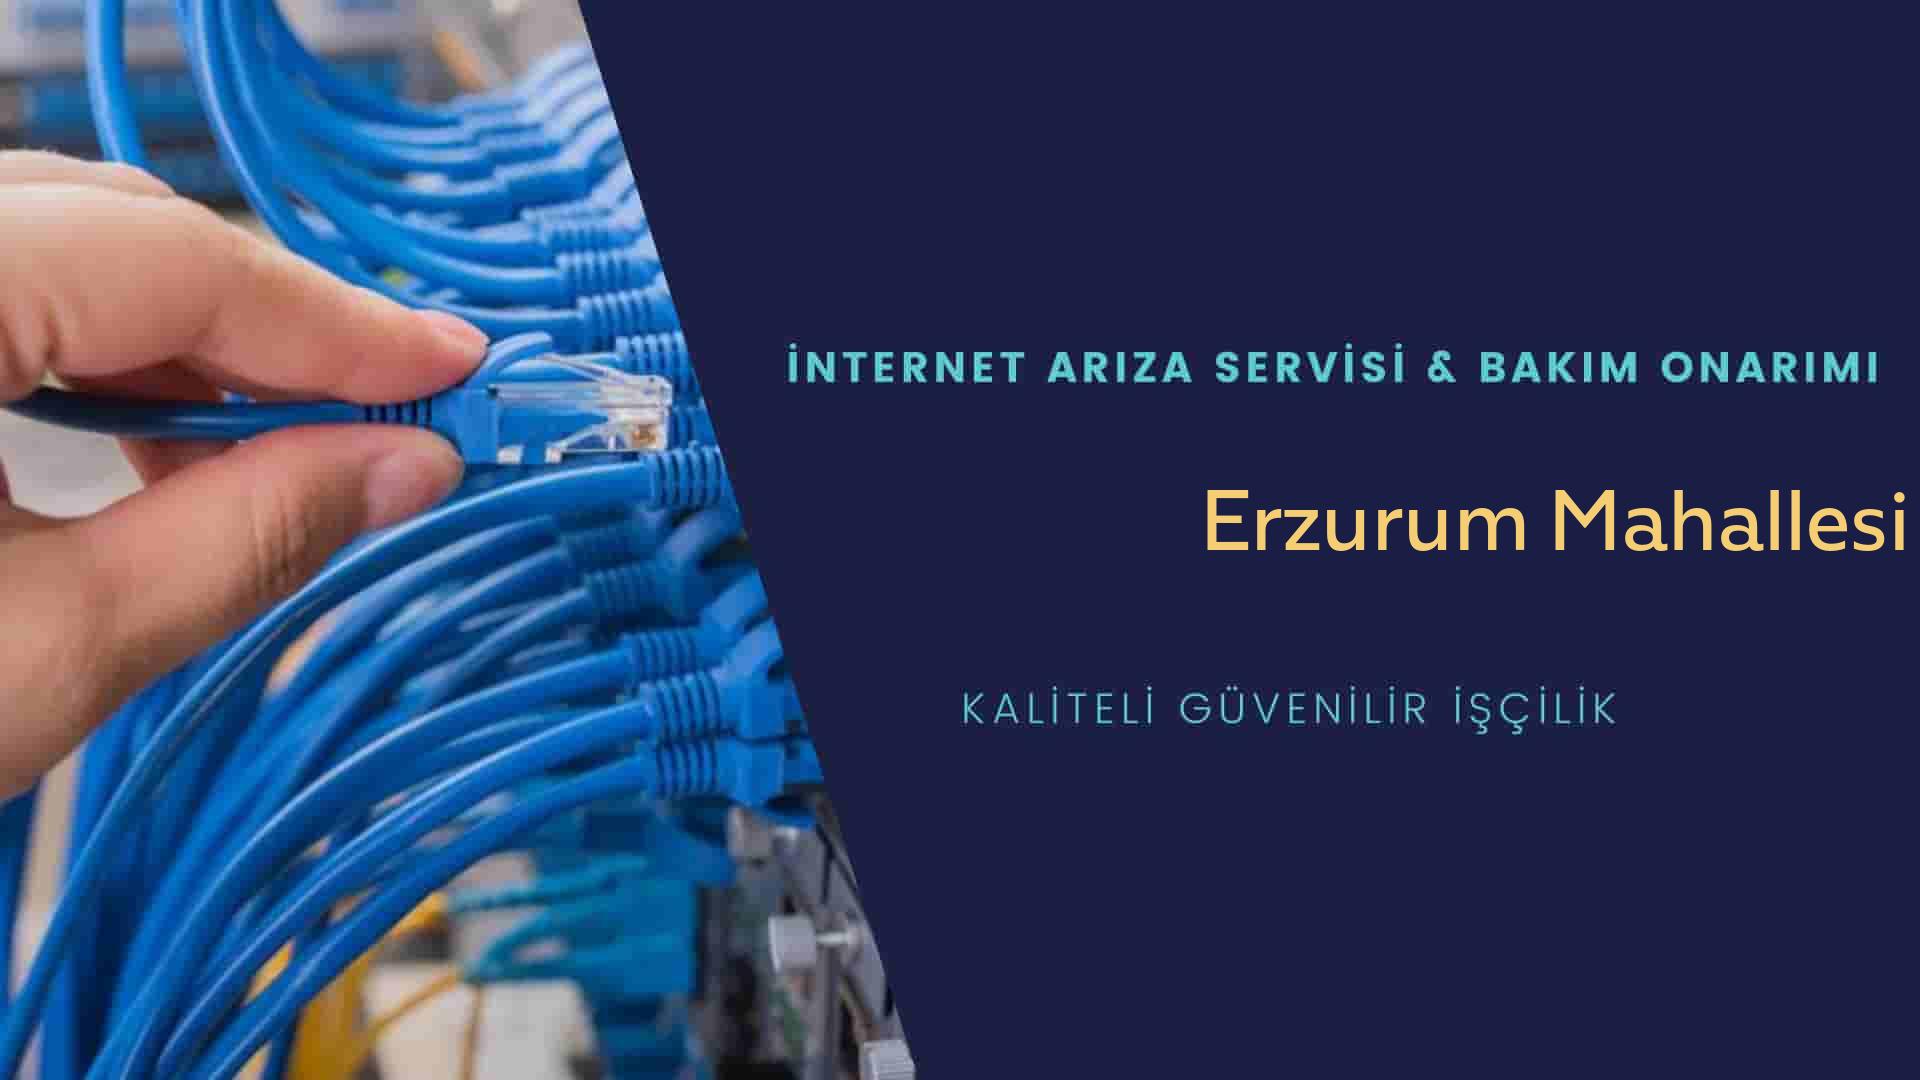 Erzurum Mahallesi internet kablosu çekimi yapan yerler veya elektrikçiler mi? arıyorsunuz doğru yerdesiniz o zaman sizlere 7/24 yardımcı olacak profesyonel ustalarımız bir telefon kadar yakındır size.